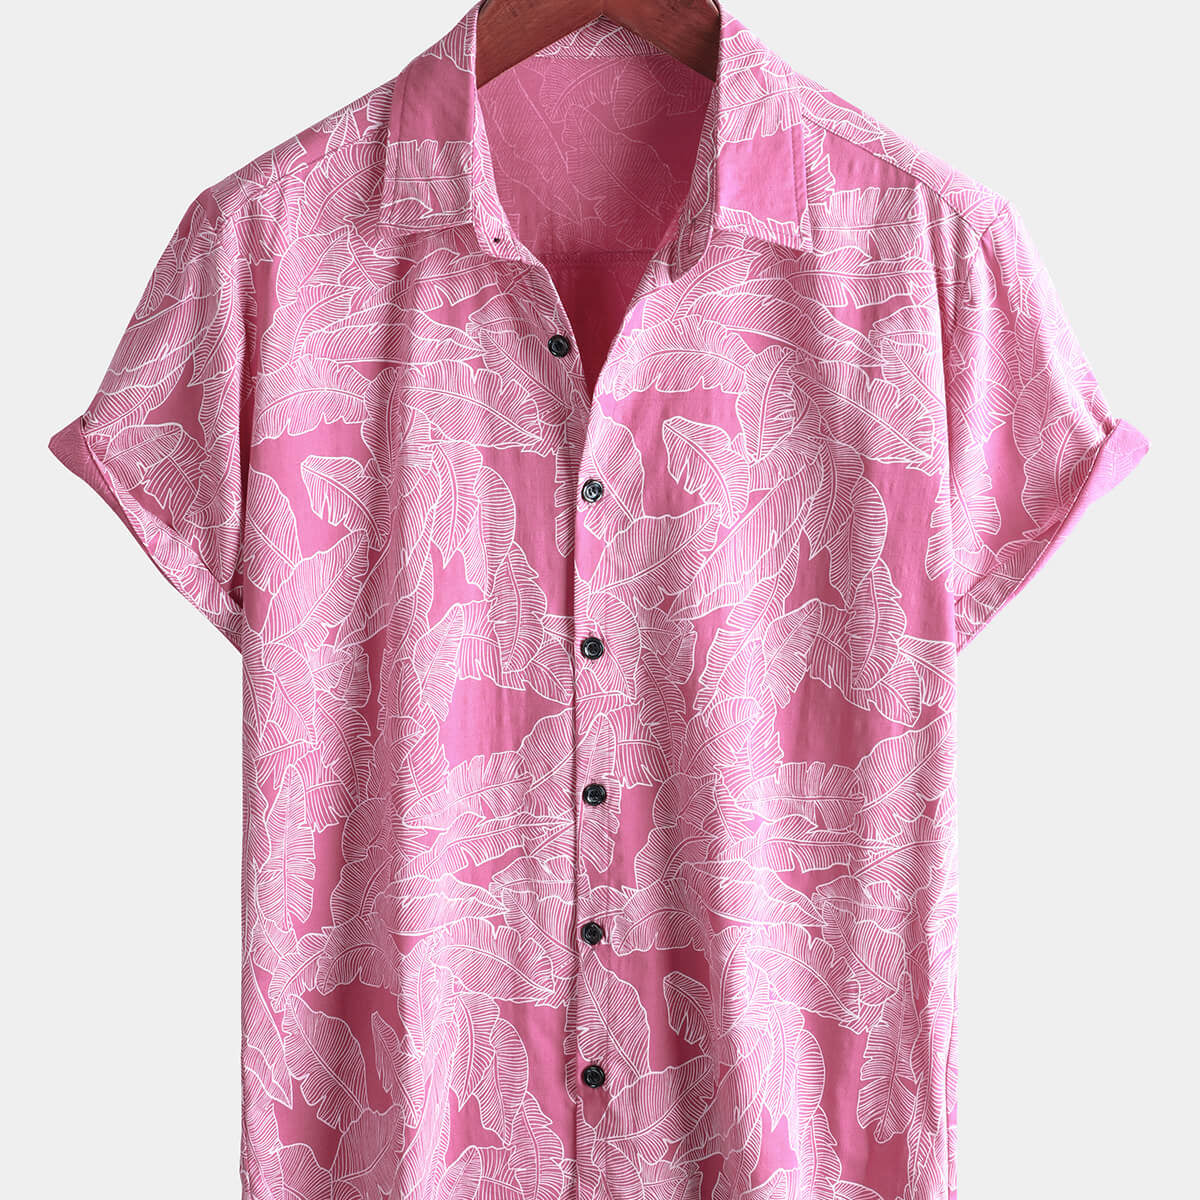 Men's Pink Tropical Hawaiian Summer Cotton Short Sleeve Shirt